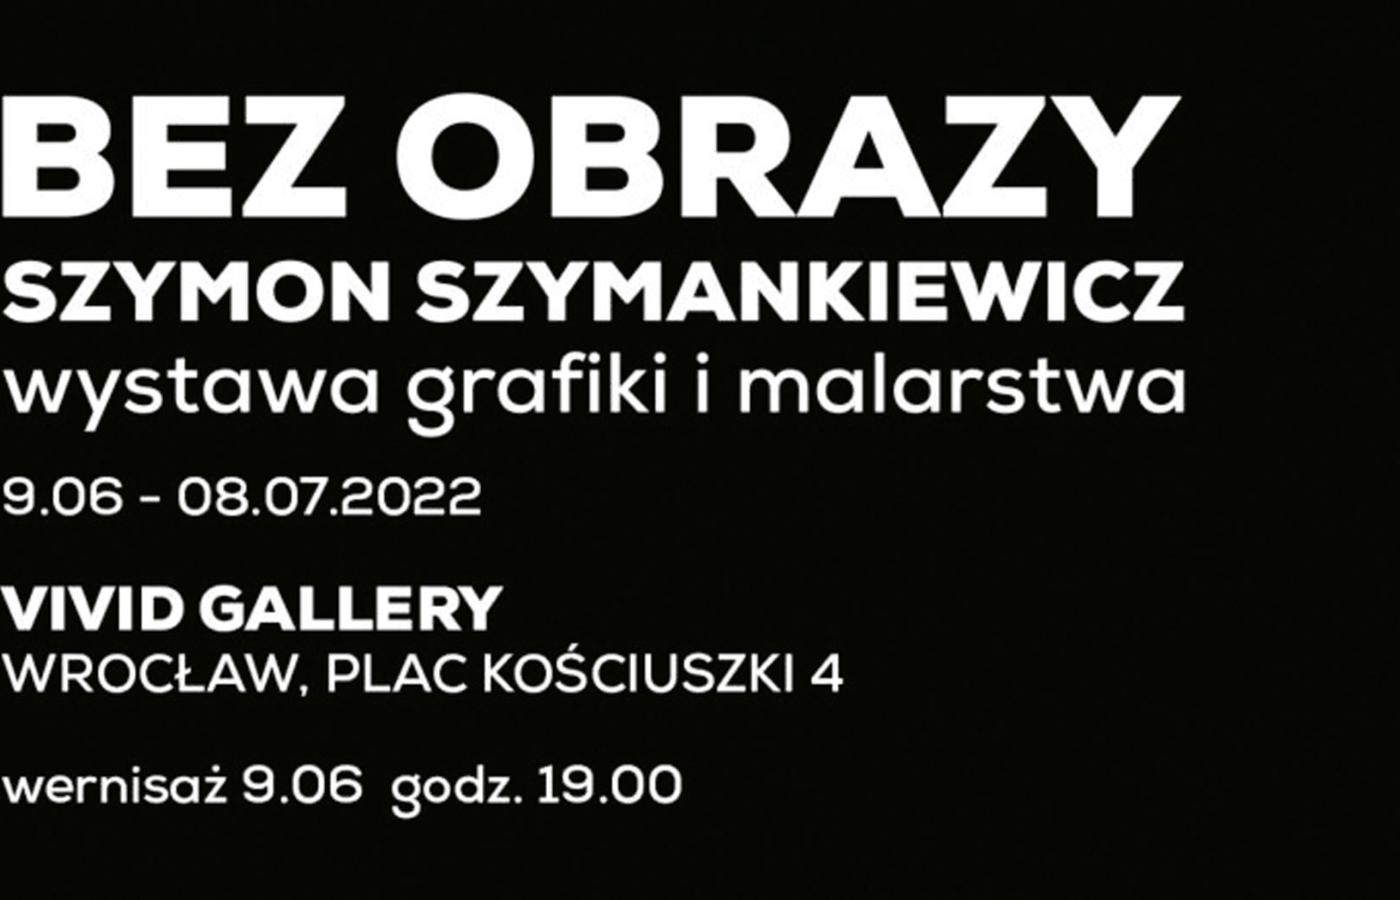 Wystawa prac Szymona Szymankiewicza we wrocławskiej galerii Vivid Gallery.